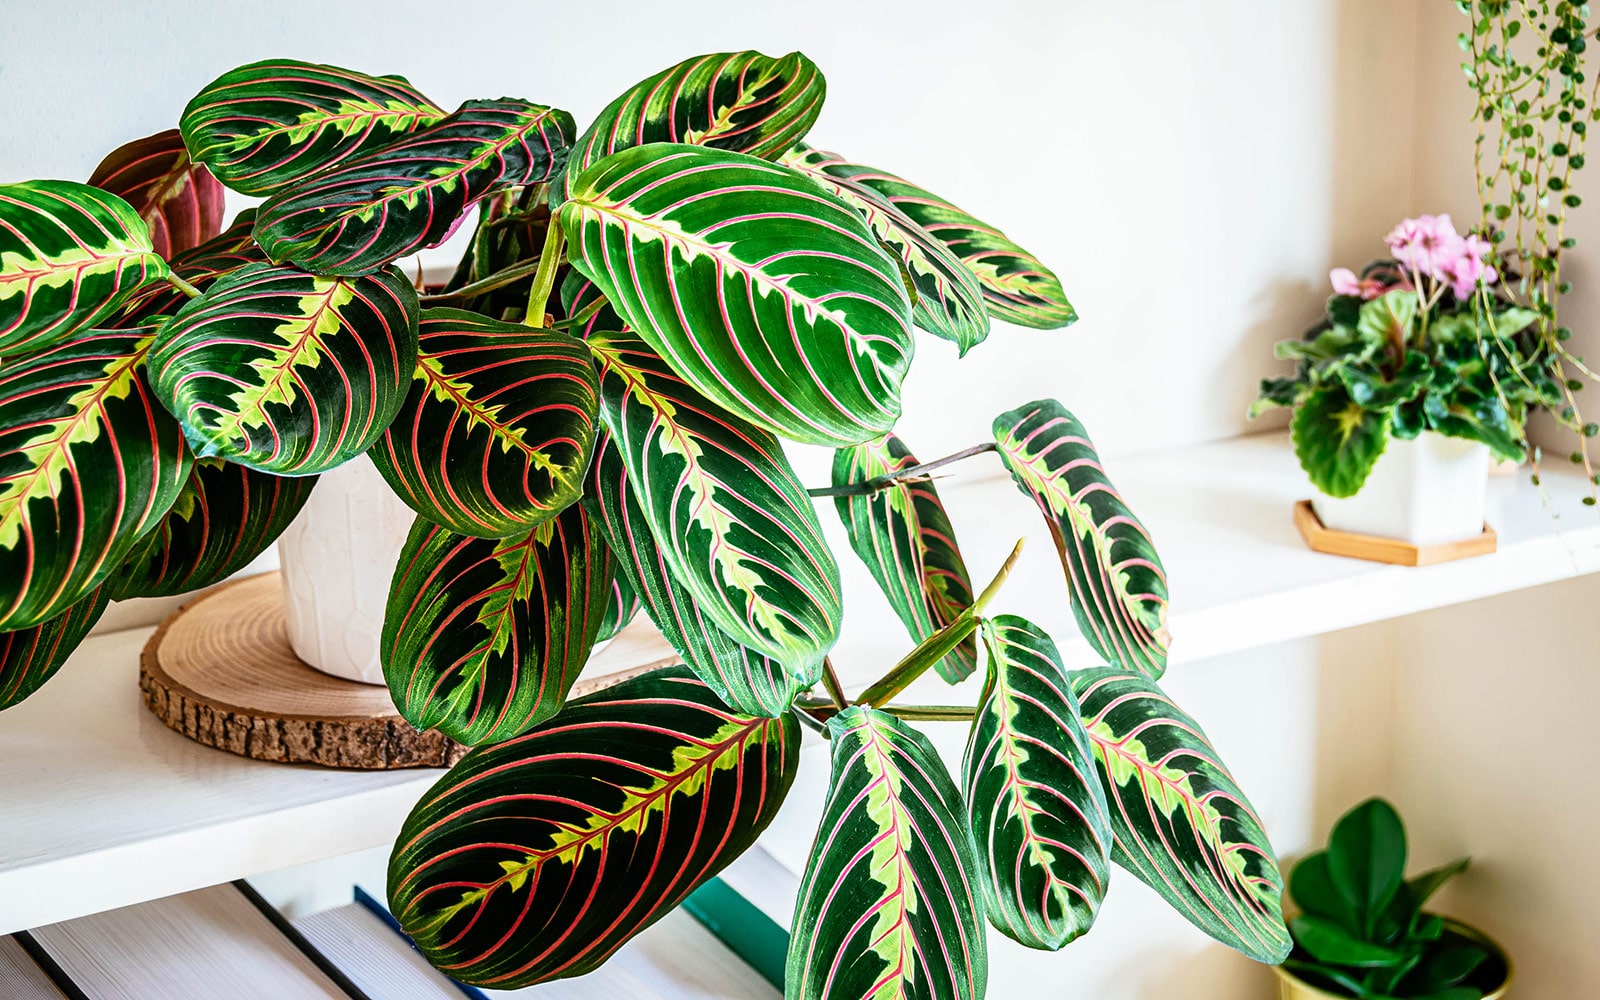 Prayer plant care: how to keep Maranta leuconeura alive